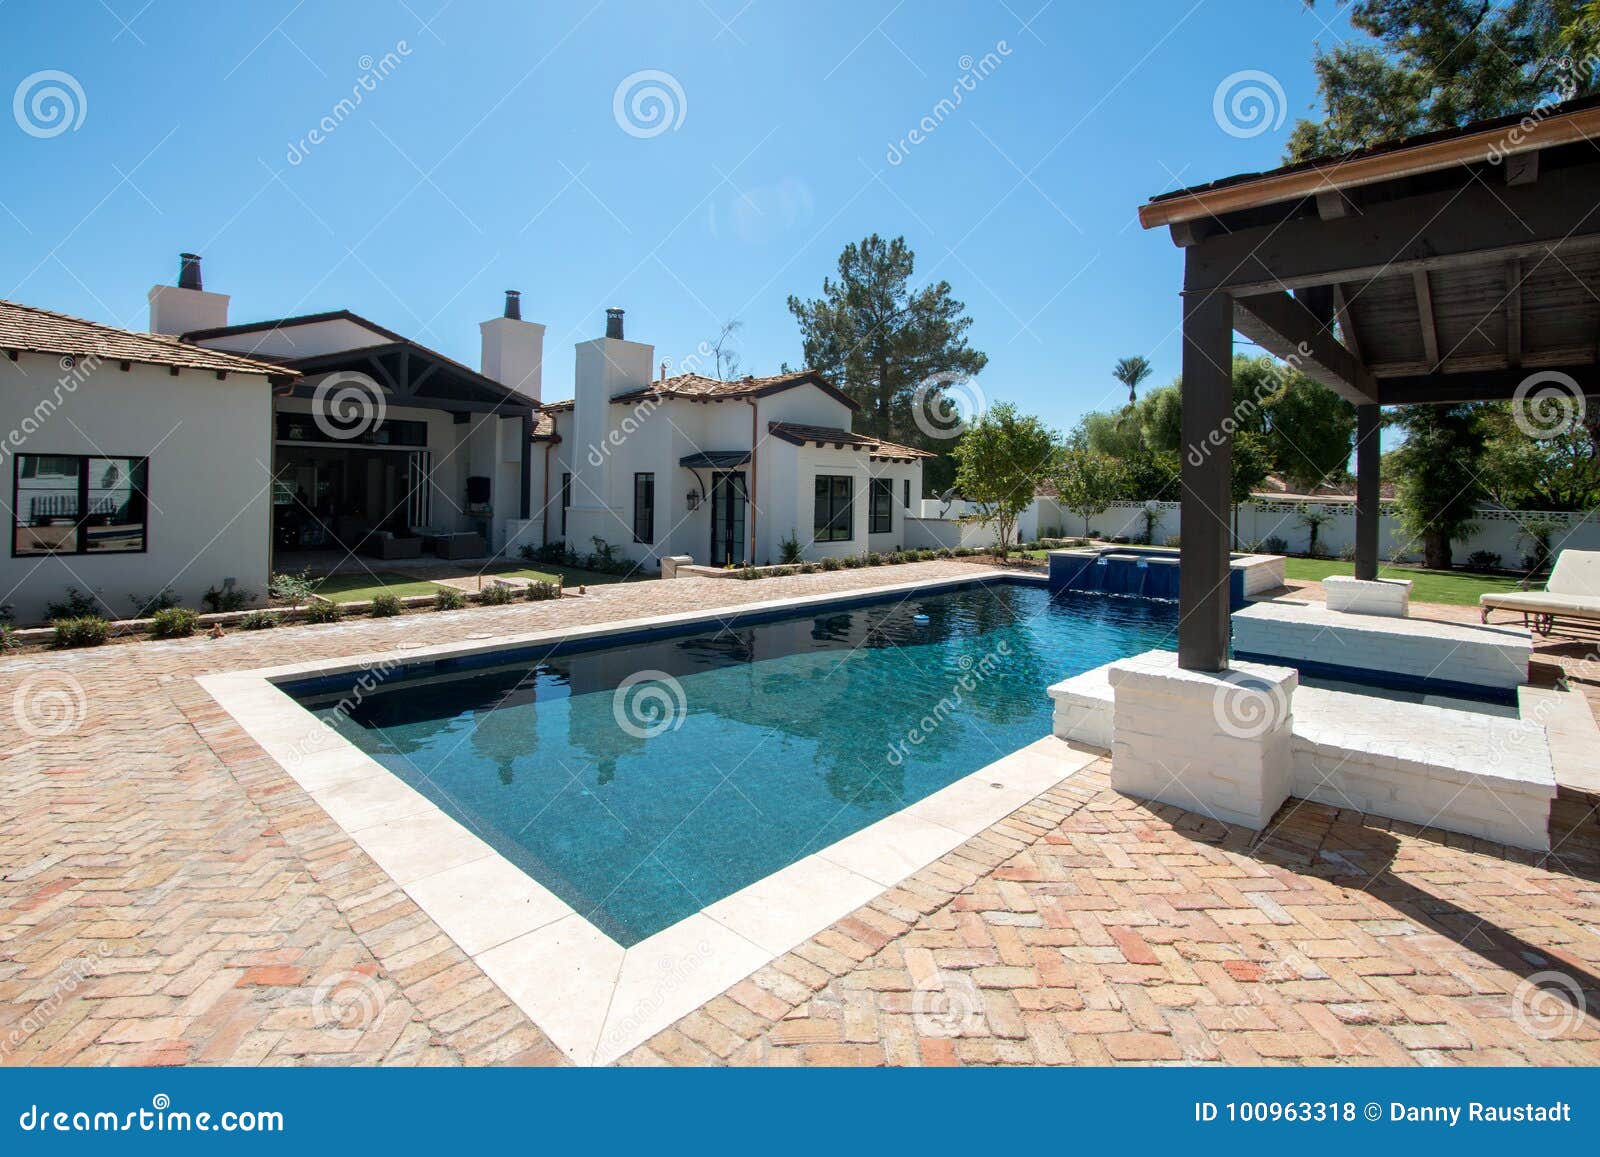 new modern classic home backyard pool